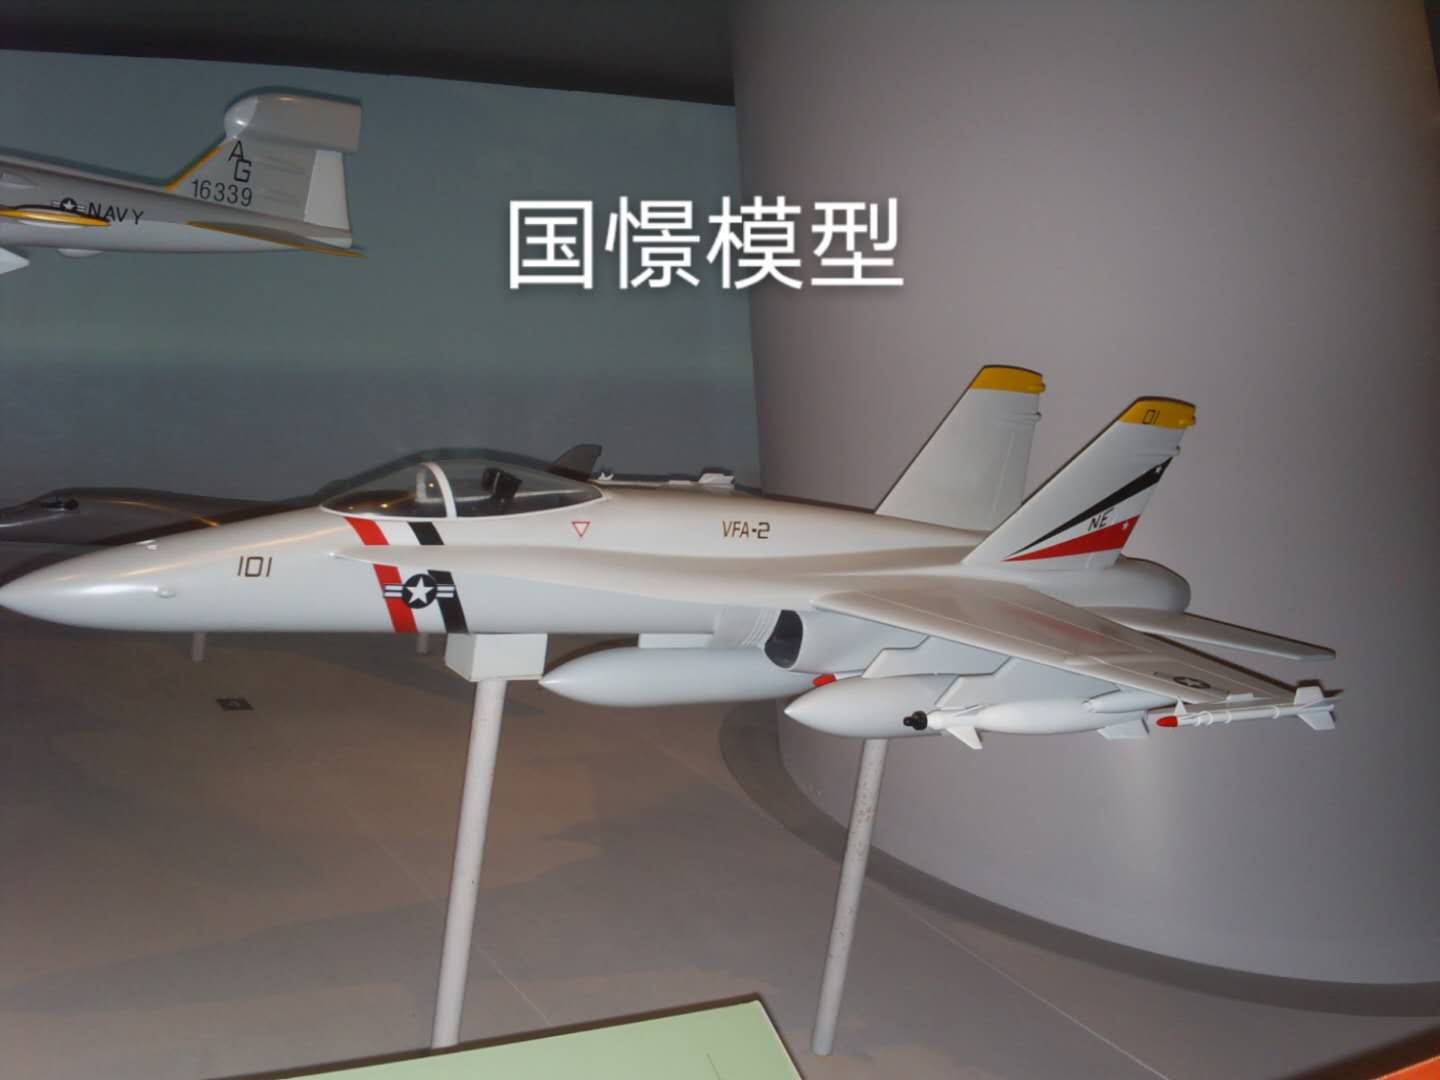 元江军事模型